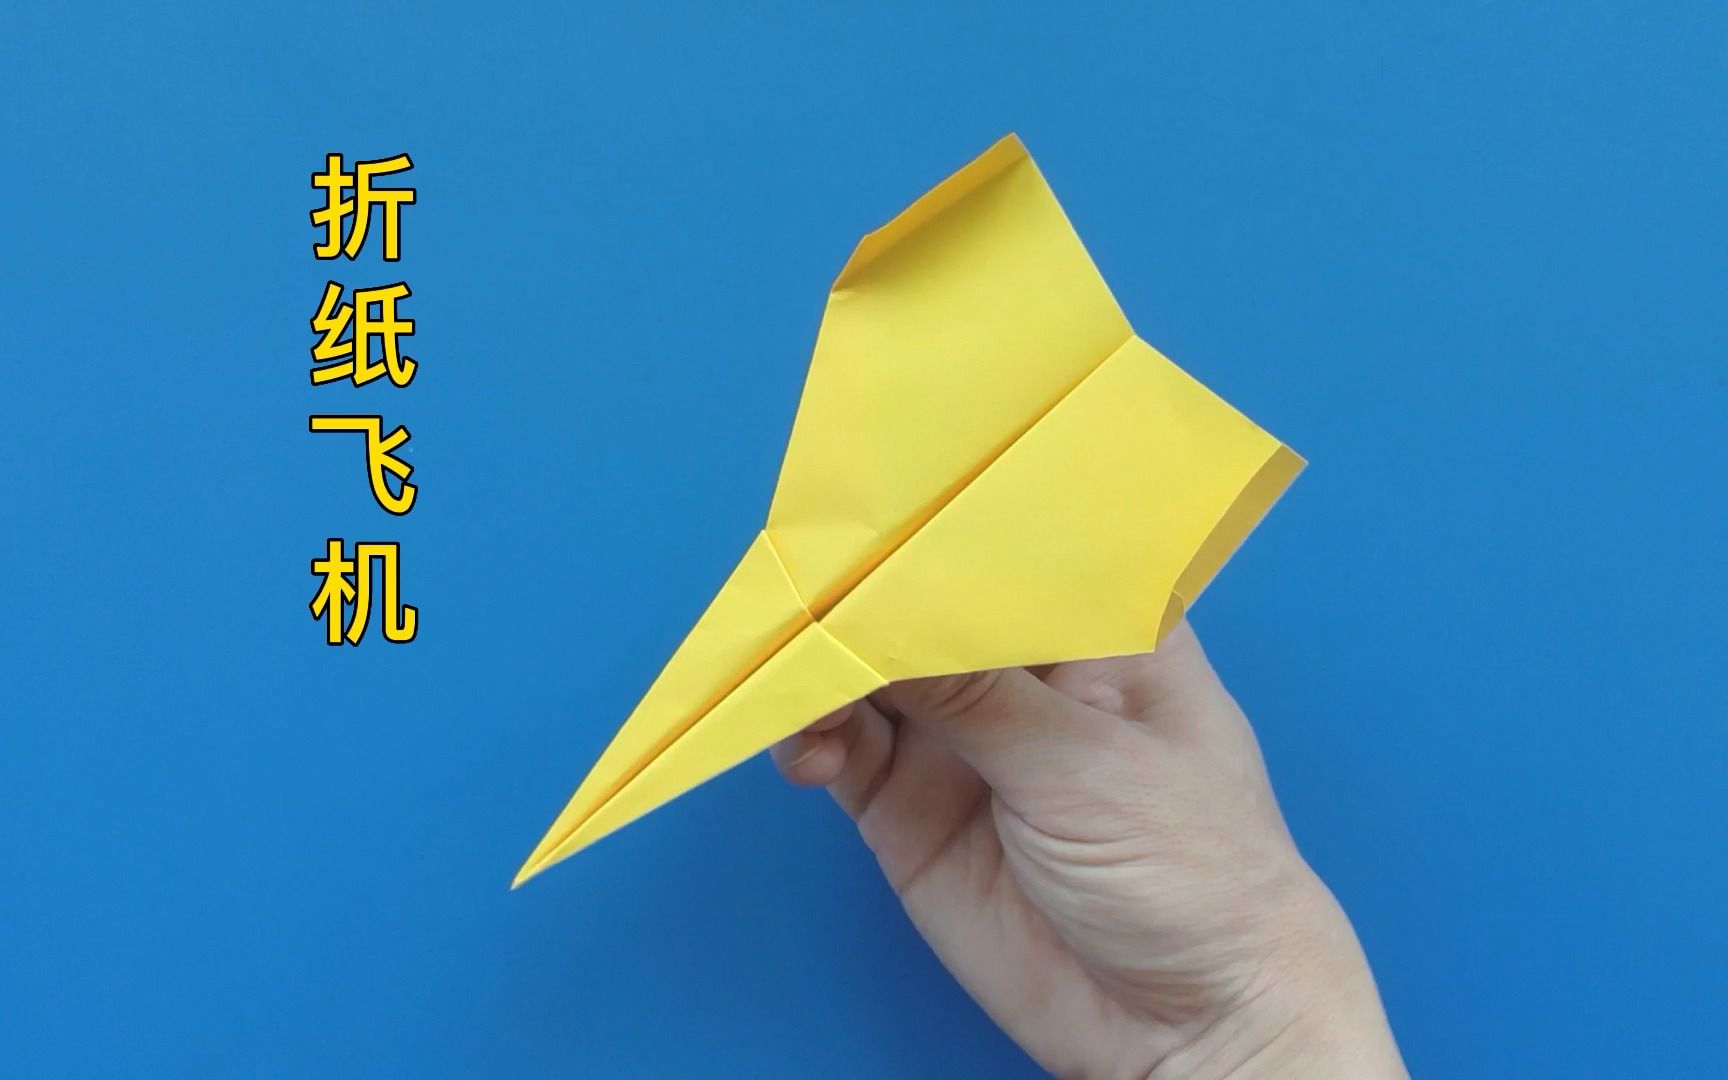 折纸零式战斗机简化版图片